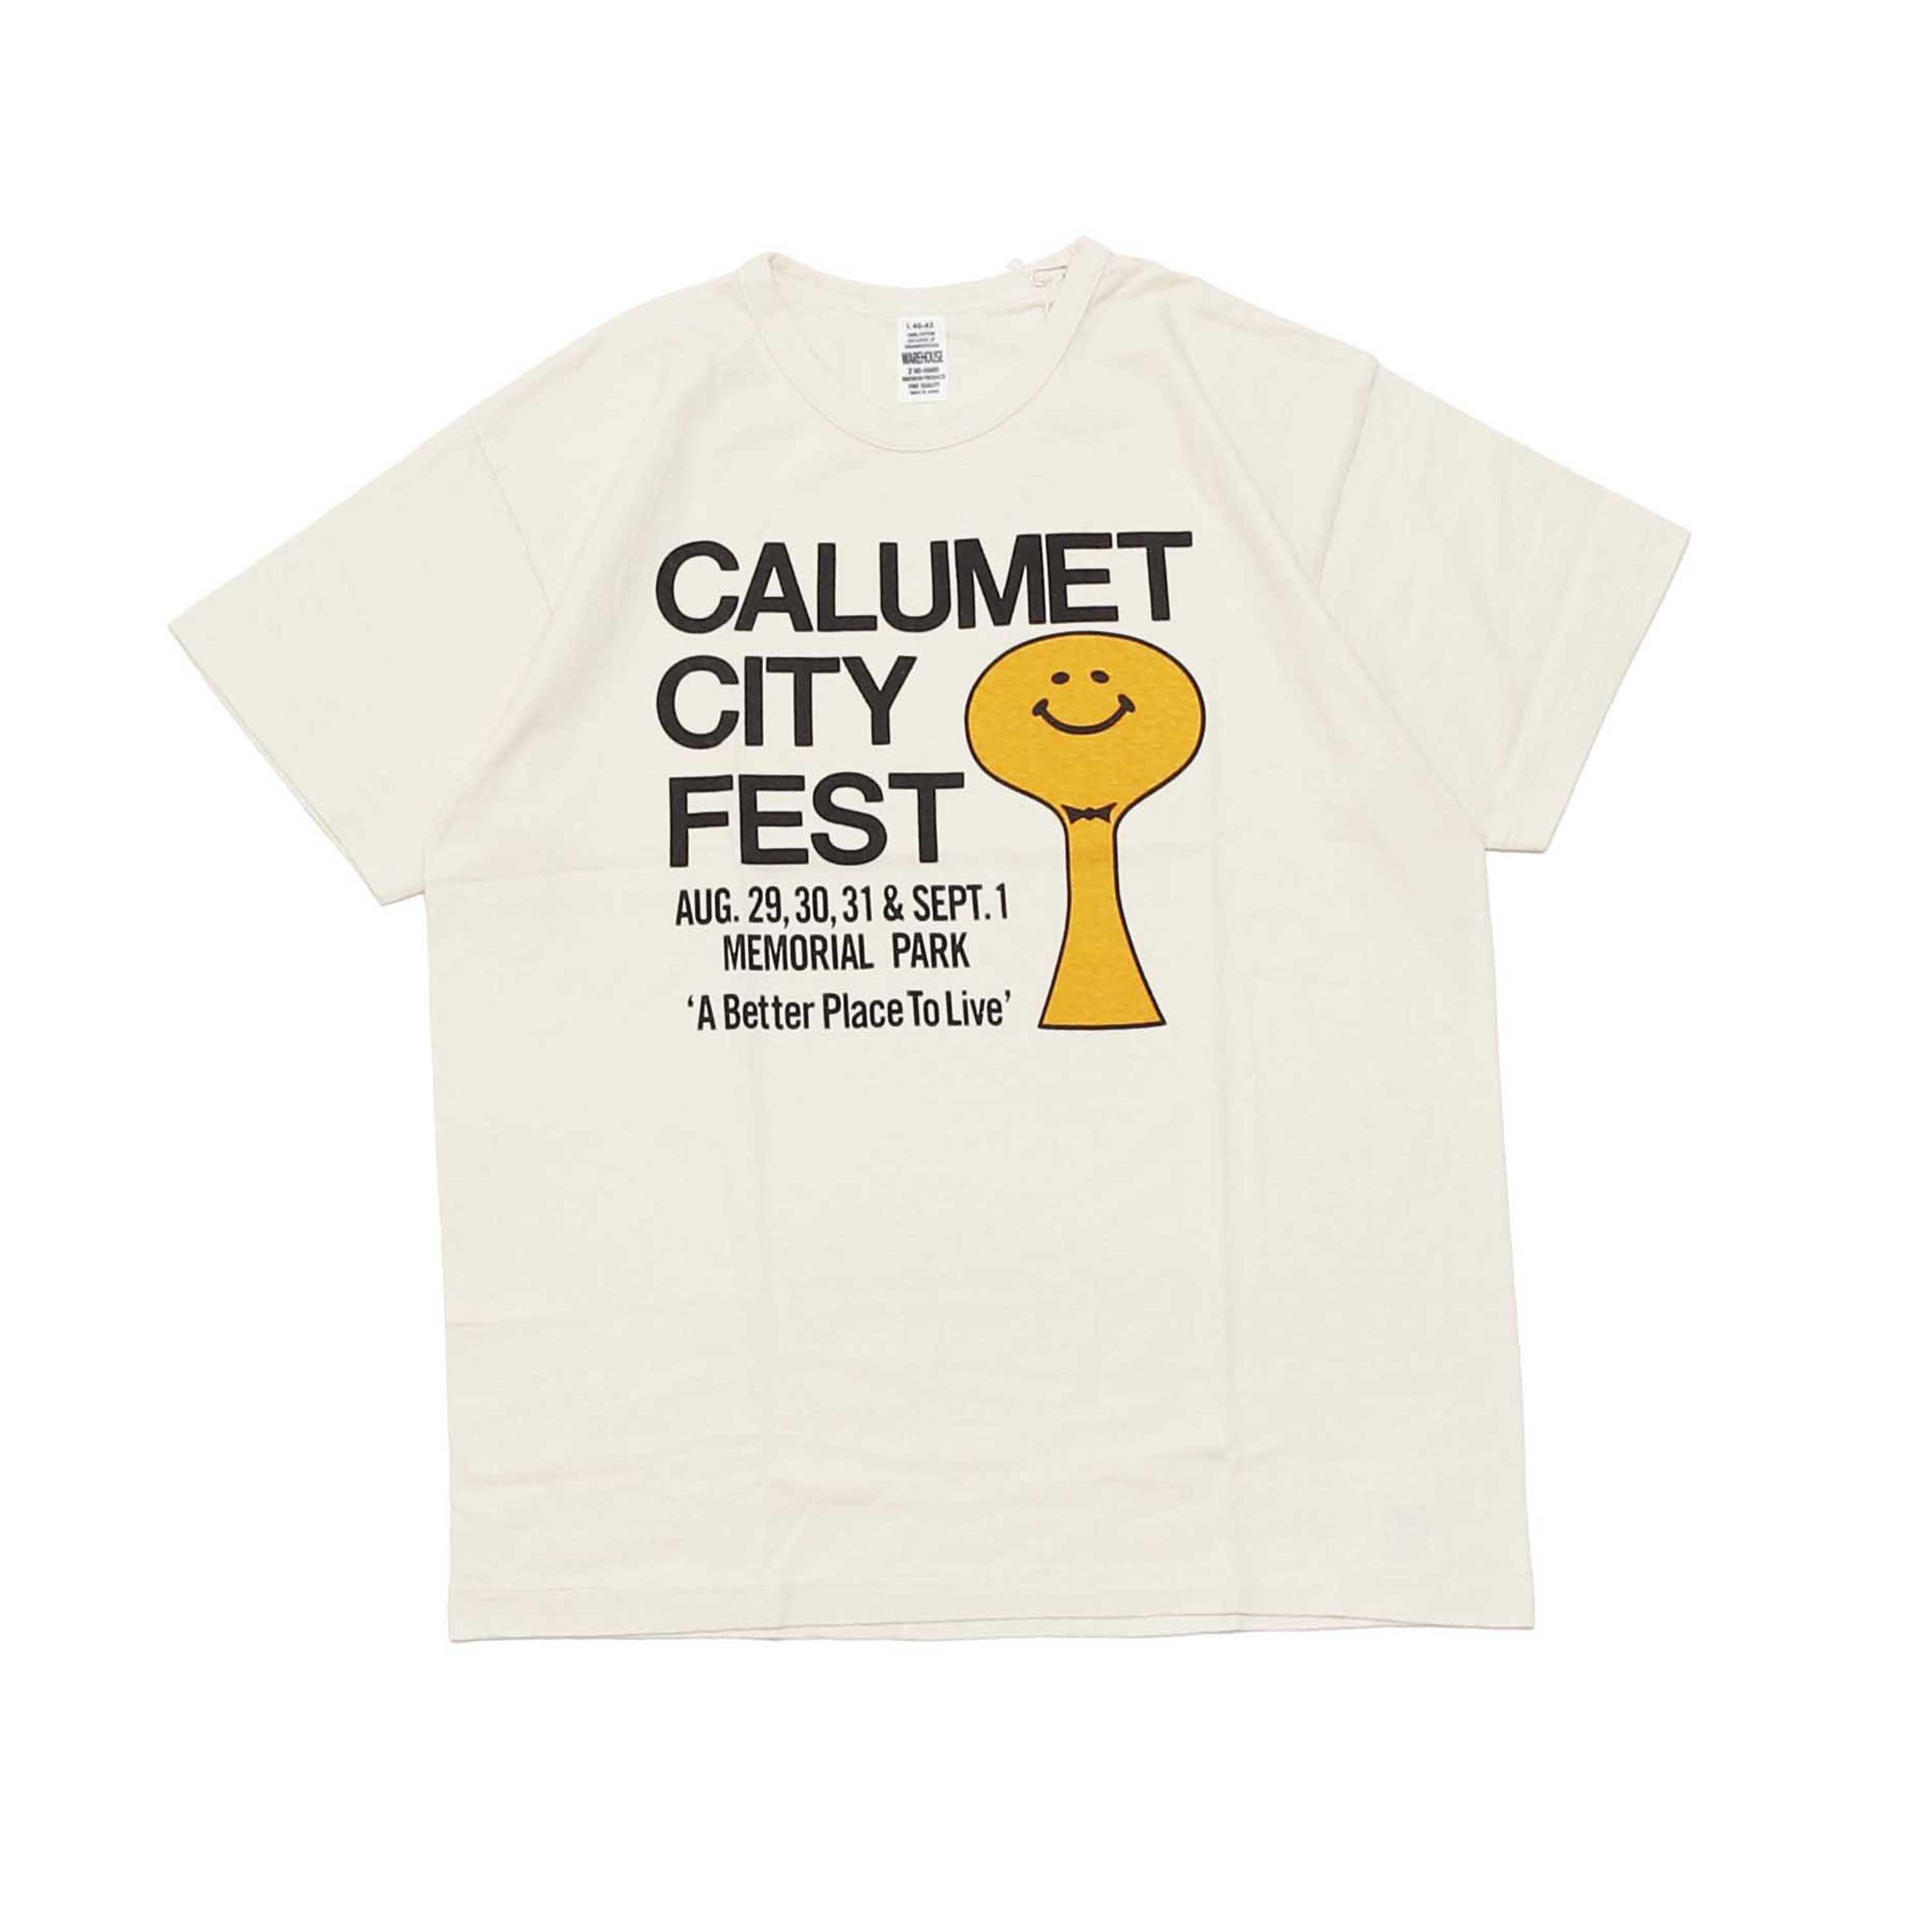 LOT 4604 CALUMET CITY FEST - CREAM